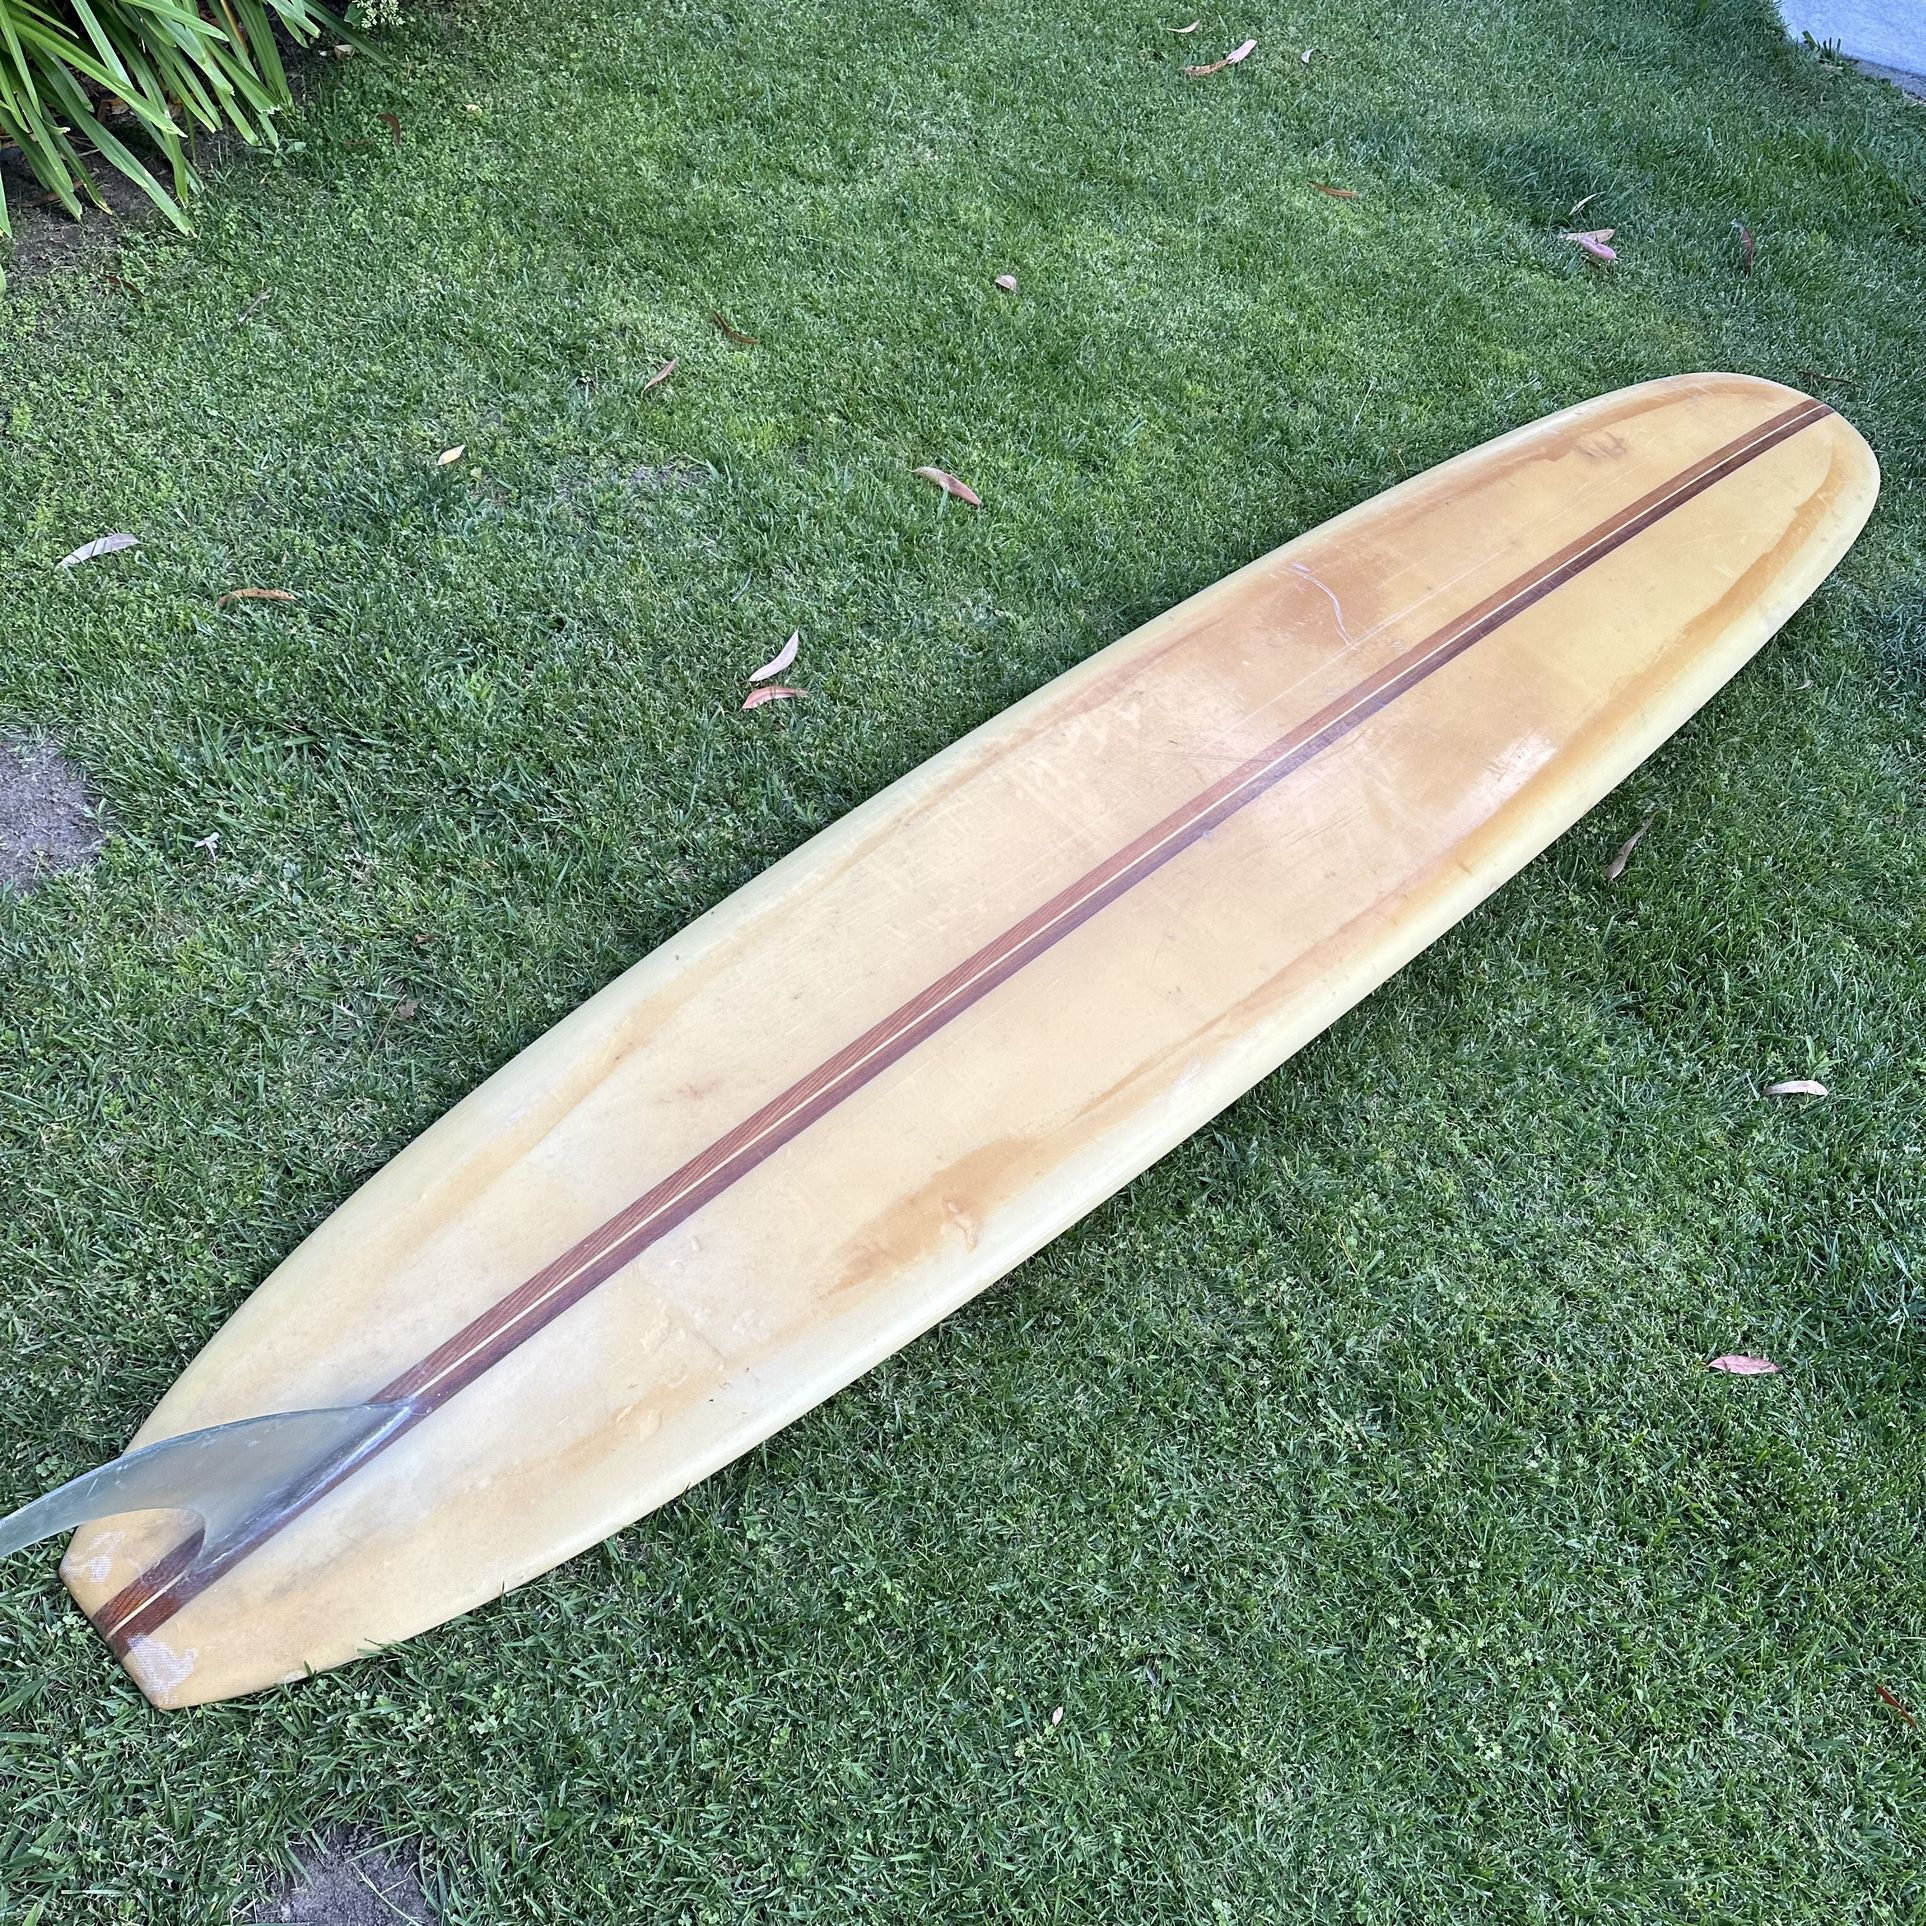 Hansen Performer Model Surfboard